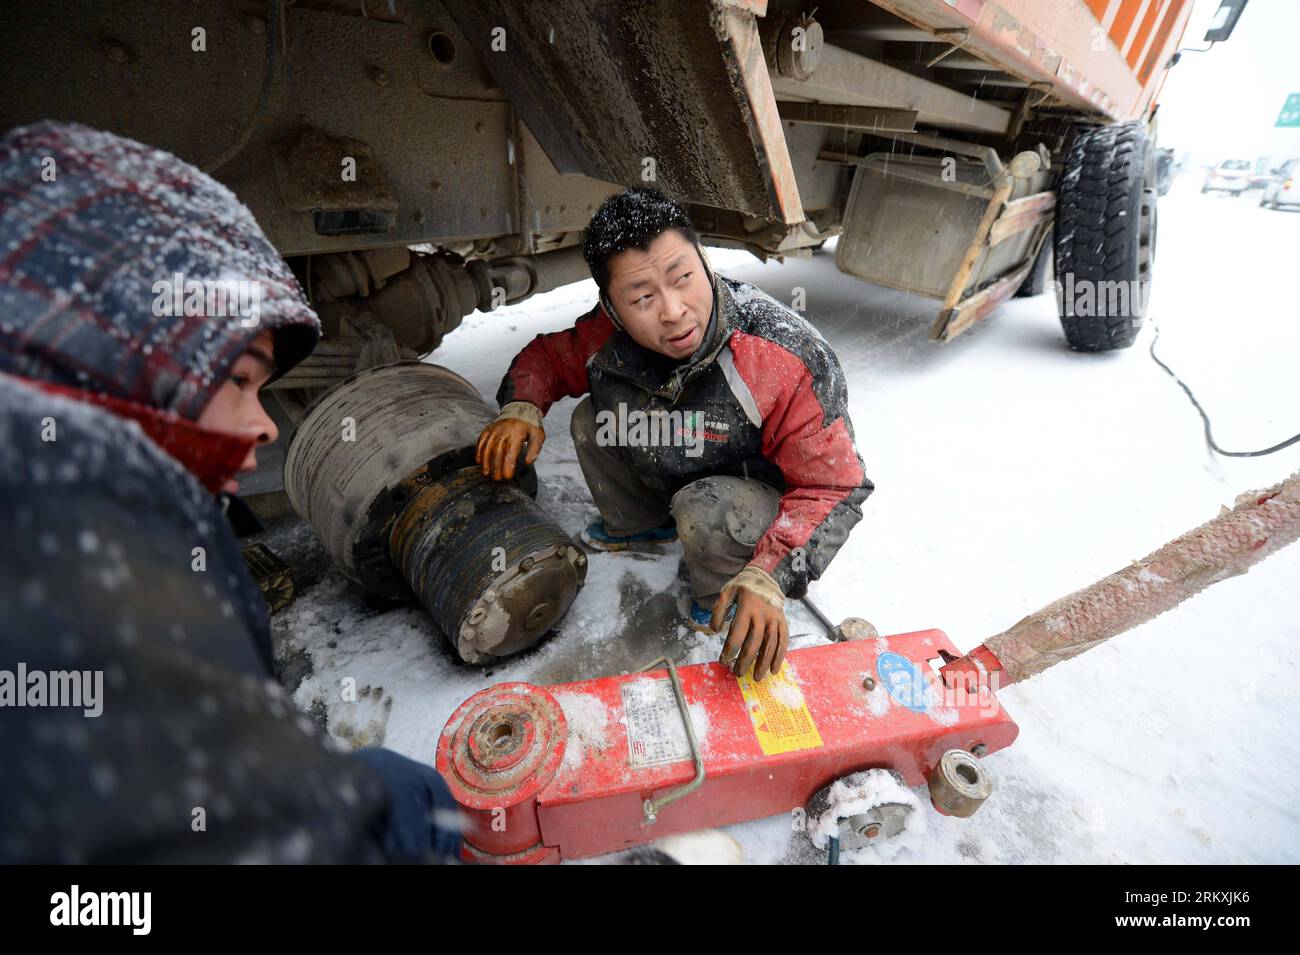 Bildnummer: 58963599 Datum: 04.01.2013 Copyright: imago/Xinhua (130104) -- NANCHANG, 4. Januar 2013 (Xinhua) -- Ein Fahrer repariert seinen Lkw auf einer vereisten Straße in Nanchang, der Hauptstadt der ostchinesischen Provinz Jiangxi, am 4. Januar 2013. Die meisten Autobahnen in Jiangxi waren gefroren und einige waren aufgrund des starken Schnees seit Donnerstagabend blockiert. Die Wetterbeobachtungsstelle der Provinz gab am Freitag einen orangen Alarm auf der eisigen Straße aus. (Xinhua/Zhou Ke) (zz) CHINA-JIANGXI-NANCHANG-ICE ROAD (CN) PUBLICATIONXNOTXINXCHN Gesellschaft Wetter Jahreszeit Winter Schnee Eis kalt Kälte Verkehr Strassenverkehr x0x xmb 2013 qu Stockfoto